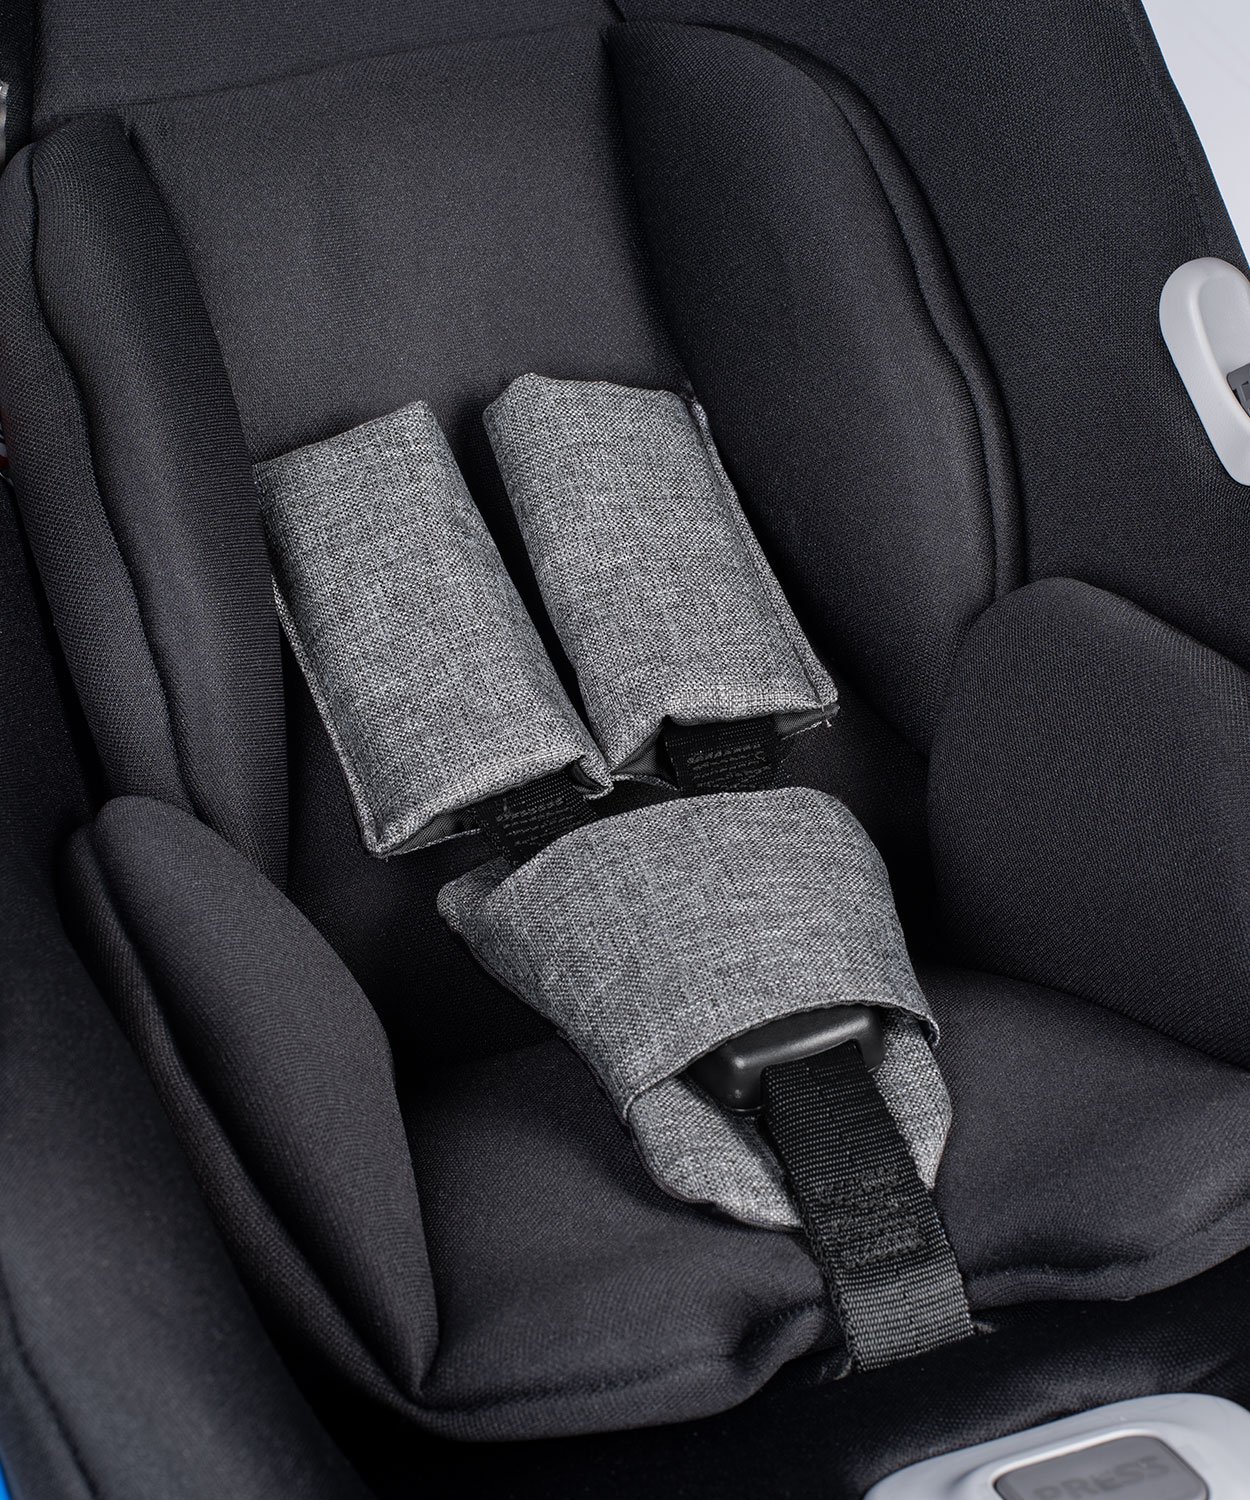 Venicci Car Seat Denim Grey - How To Fit Venicci Car Seat With Seatbelt